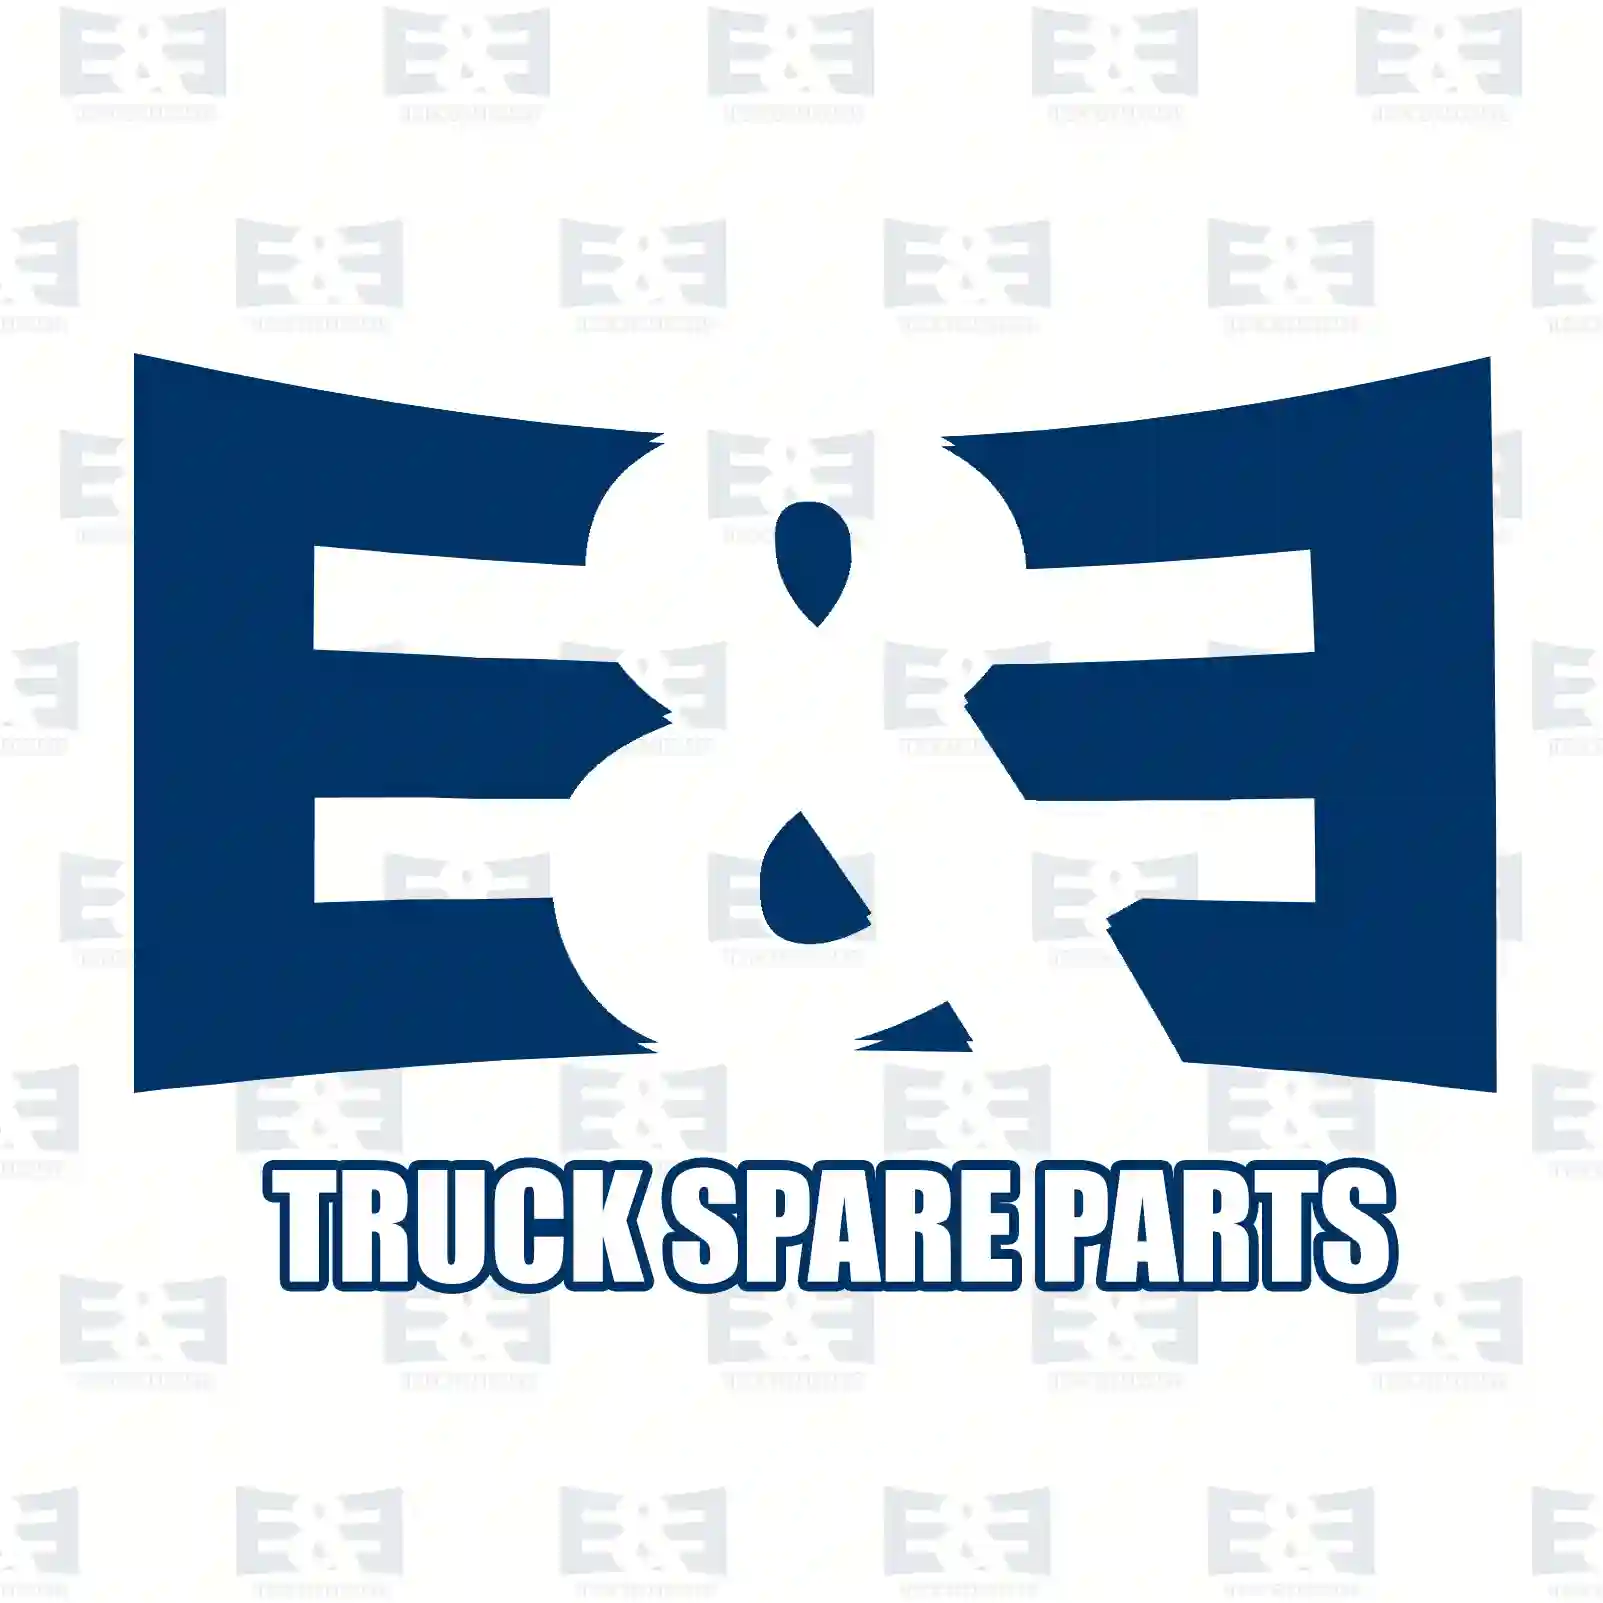 Oil seal, 2E2277880, 1875800, ZG02596-0008, , ||  2E2277880 E&E Truck Spare Parts | Truck Spare Parts, Auotomotive Spare Parts Oil seal, 2E2277880, 1875800, ZG02596-0008, , ||  2E2277880 E&E Truck Spare Parts | Truck Spare Parts, Auotomotive Spare Parts